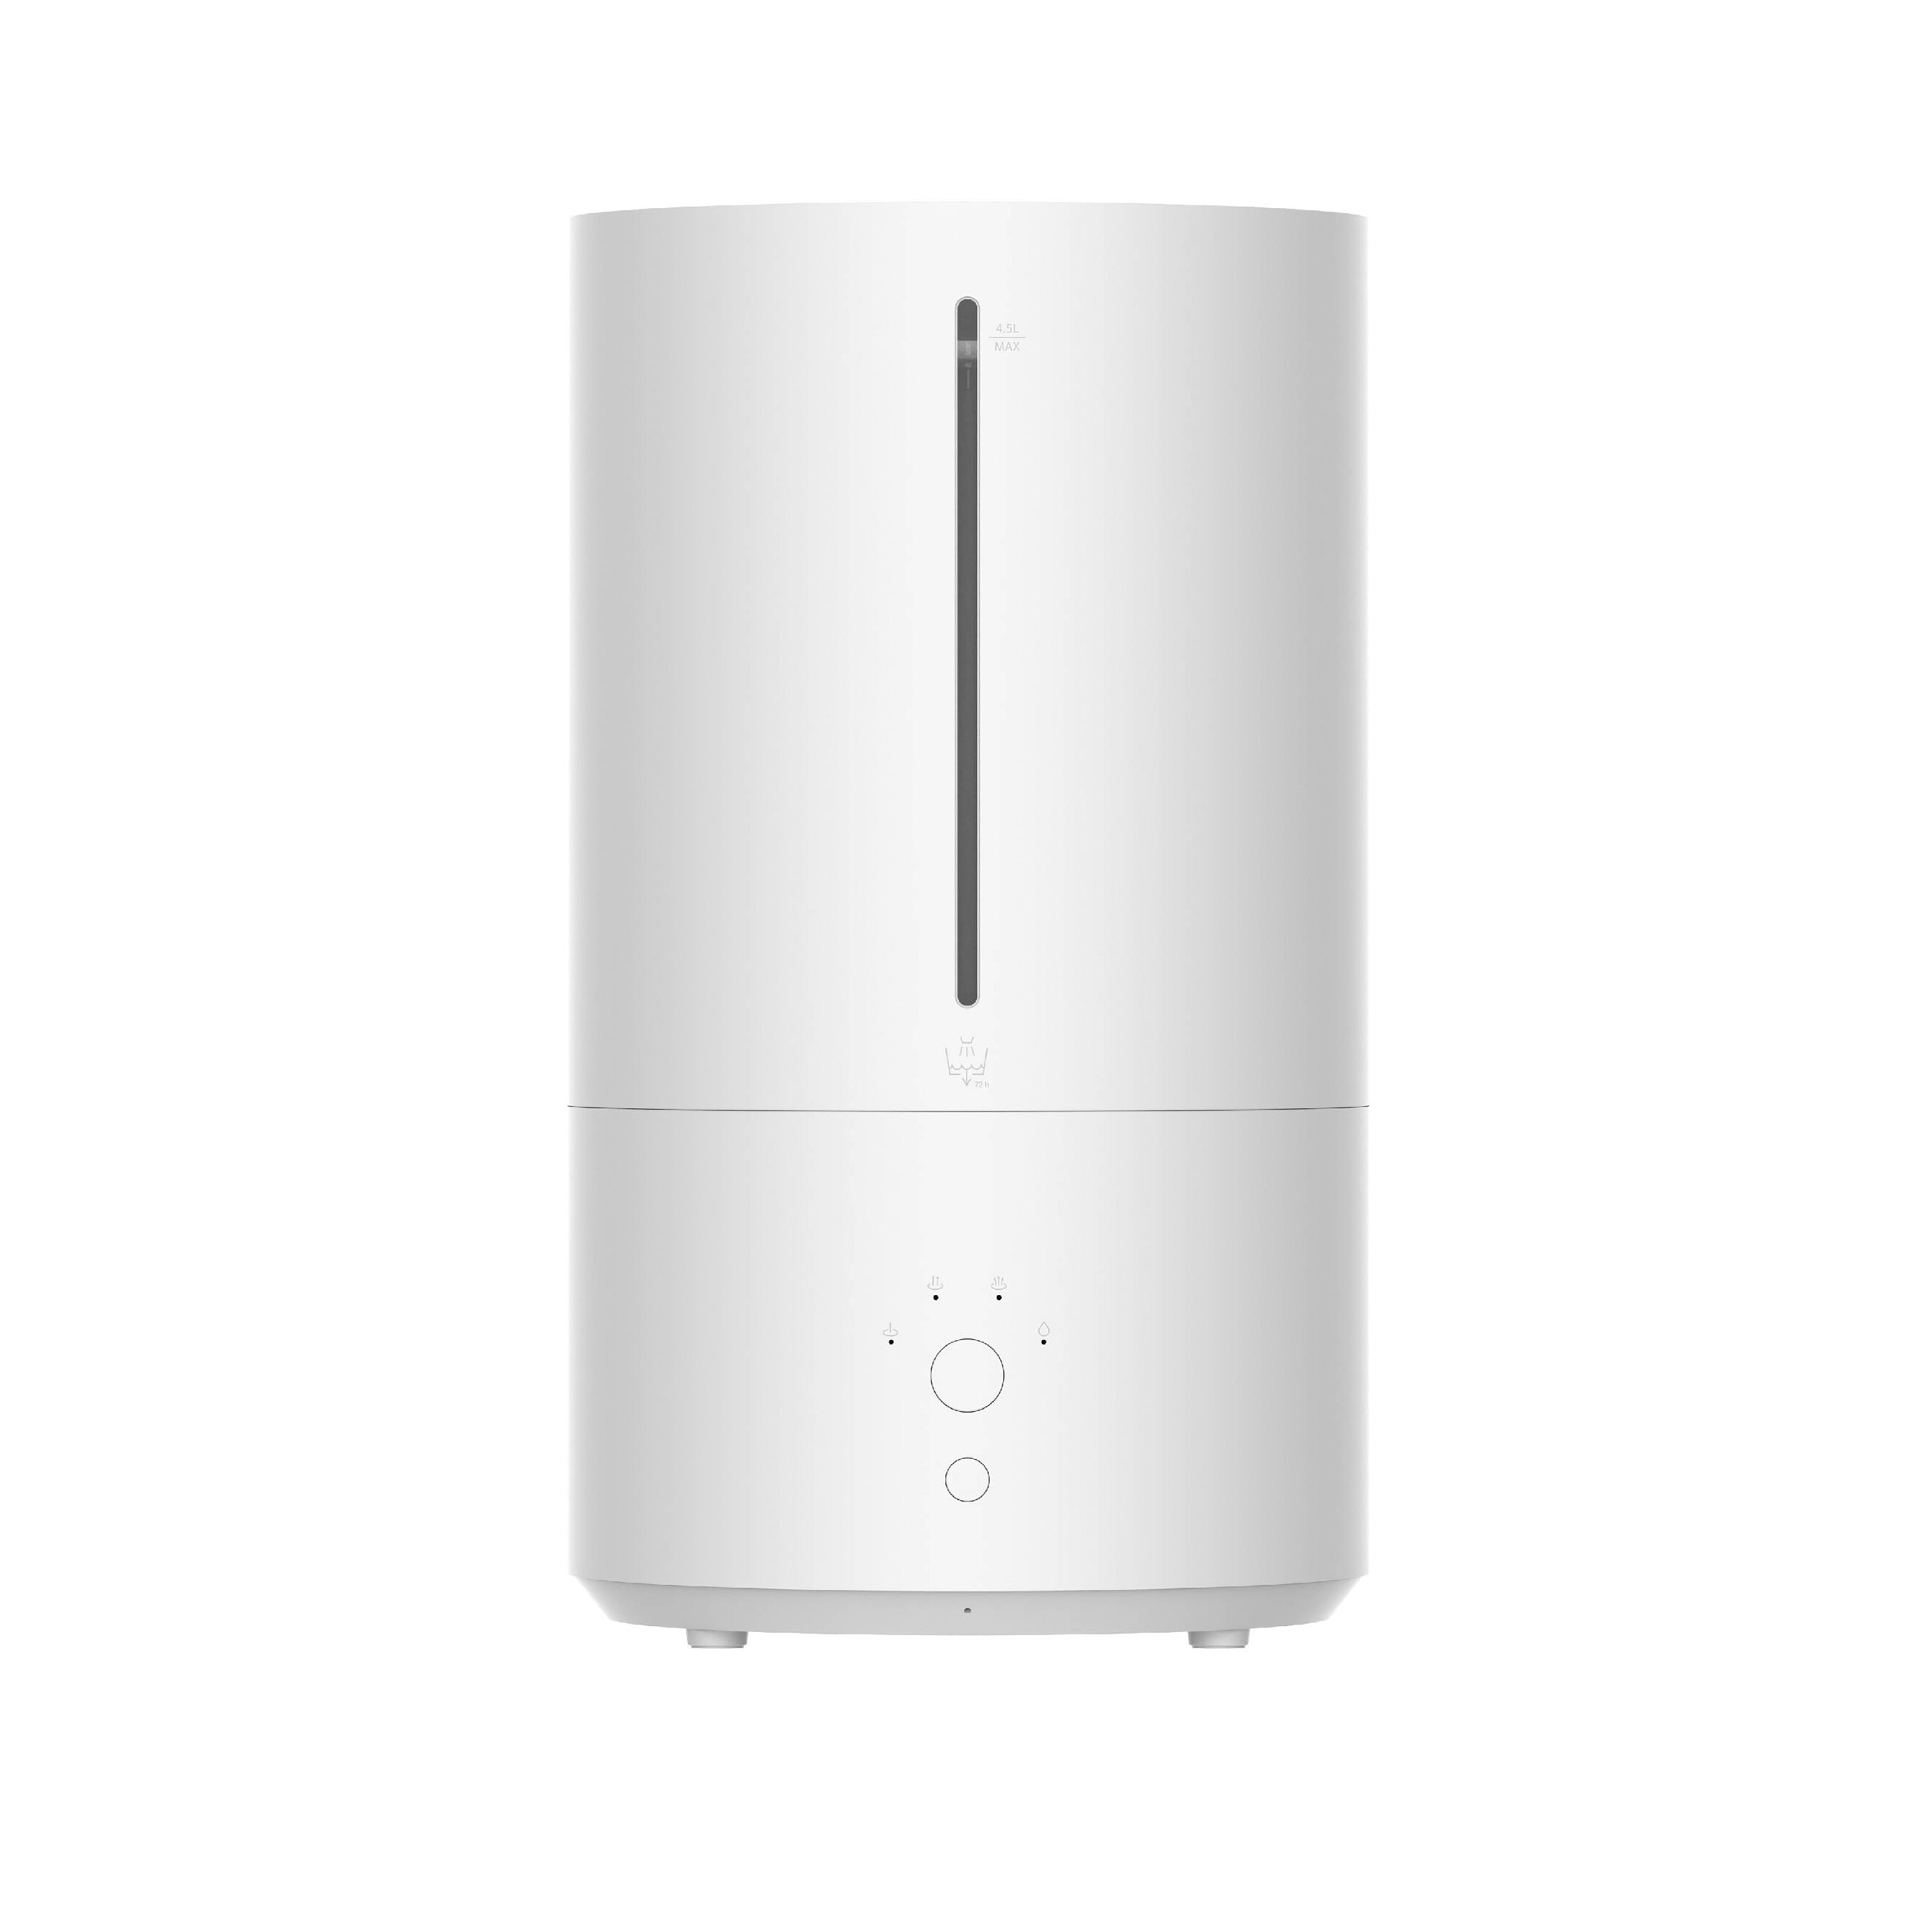 XIAOMI Xiaomi Smart Humidifier 2 Raumgröße: 20 Weiss m²) Luftbefeuchter (28 EU, Watt, BHR6026EU